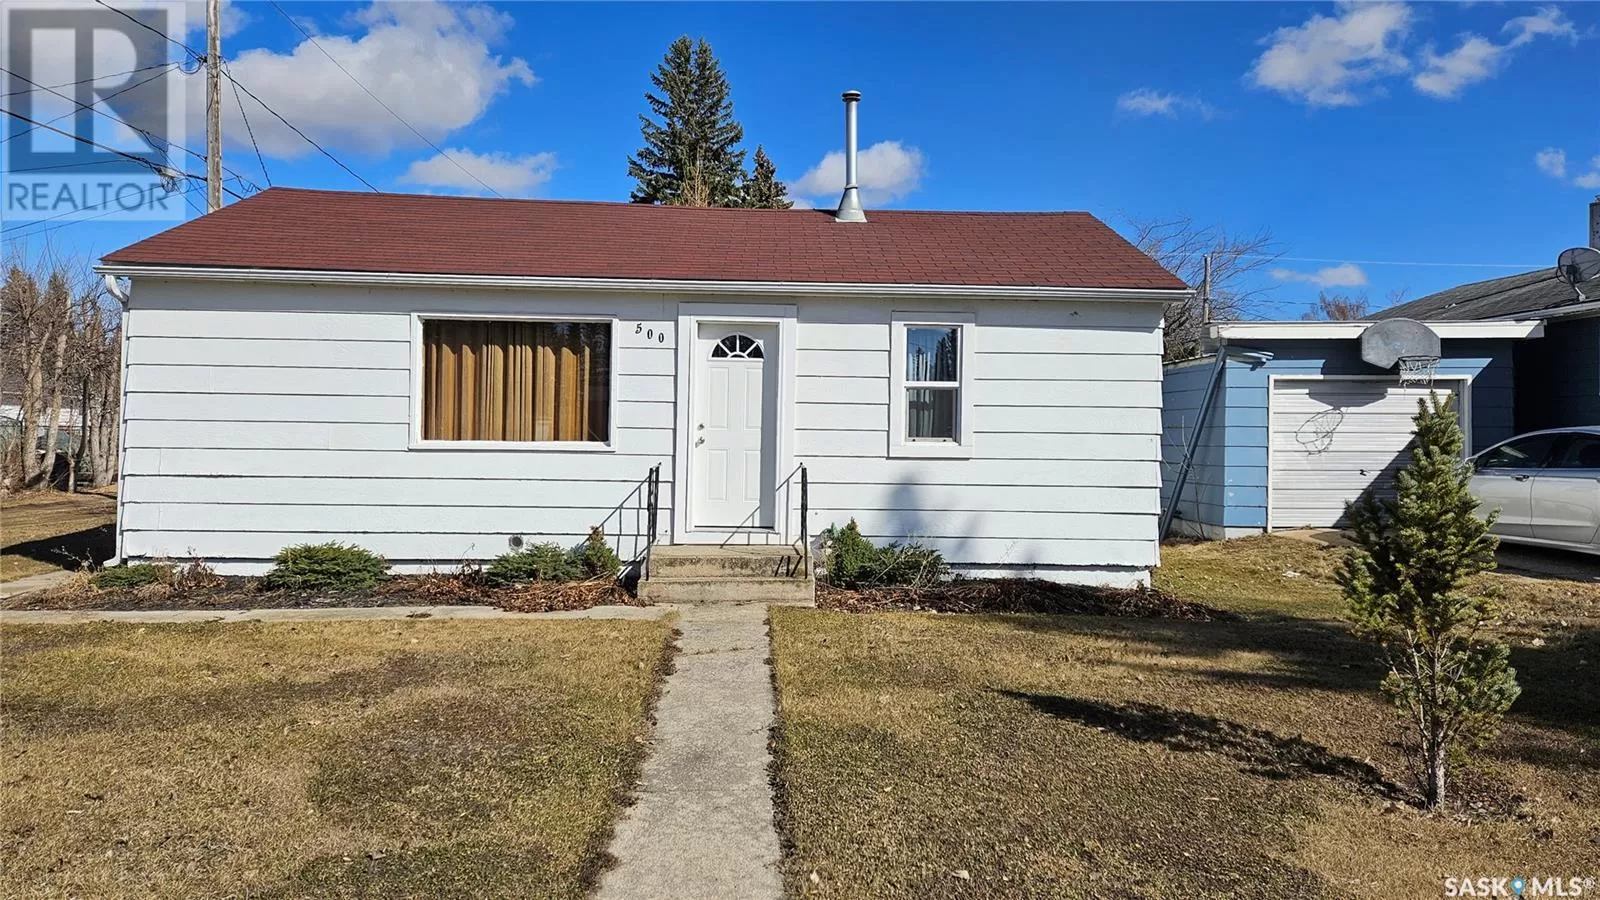 House for rent: 500 6th Avenue, Cudworth, Saskatchewan S0K 1B0